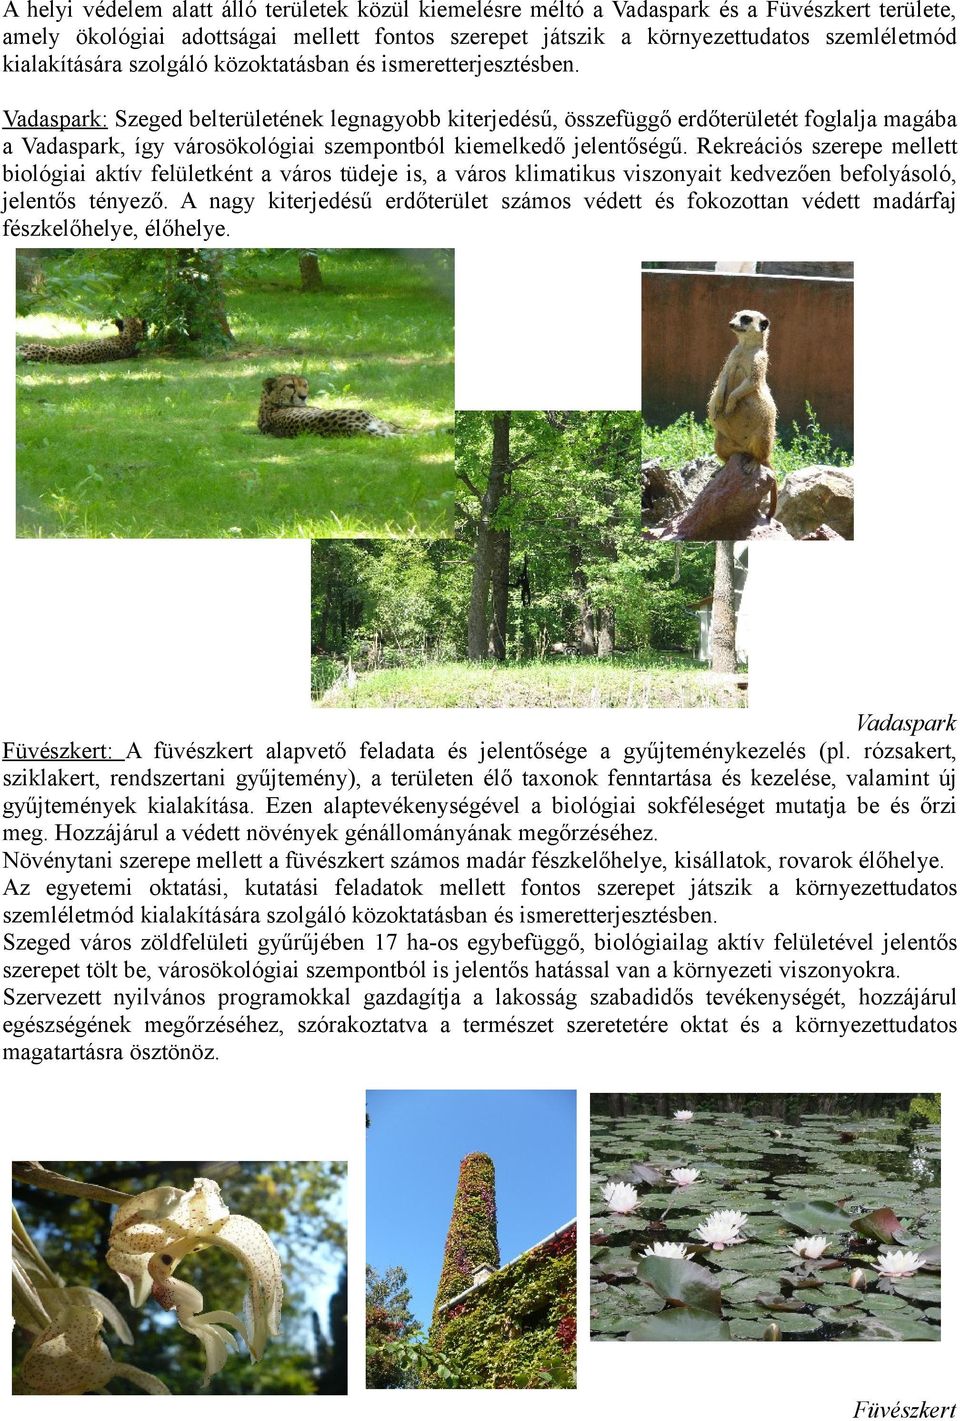 Vadaspark: Szeged belterületének legnagyobb kiterjedésű, összefüggő erdőterületét foglalja magába a Vadaspark, így városökológiai szempontból kiemelkedő jelentőségű.